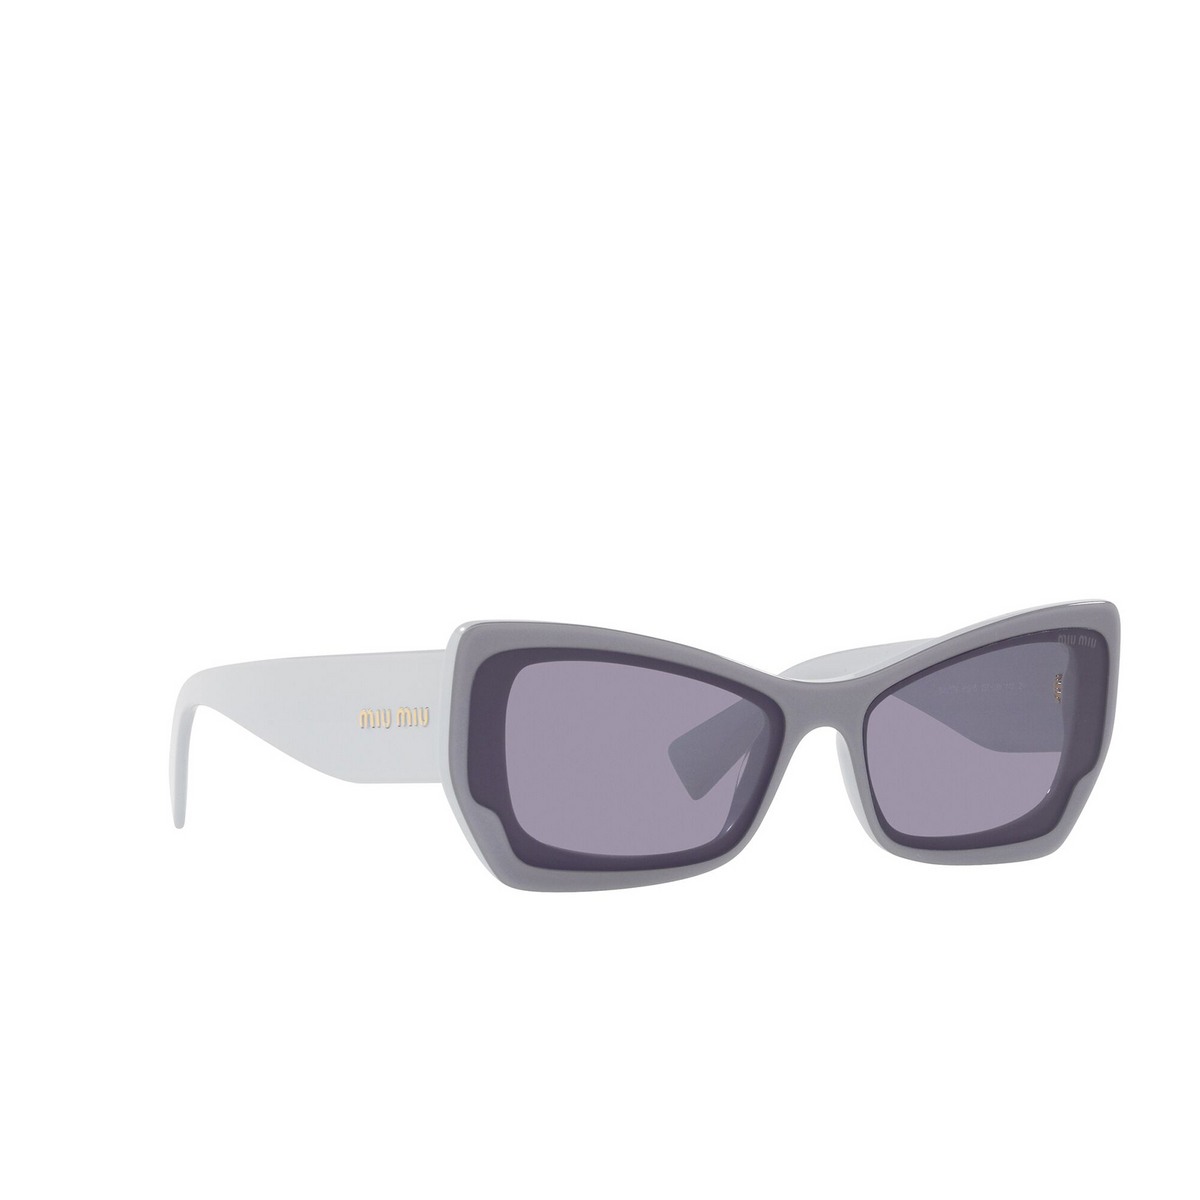 Miu Miu® Irregular Sunglasses: MU 07XS color Light Blue Blue 02T03N - three-quarters view.